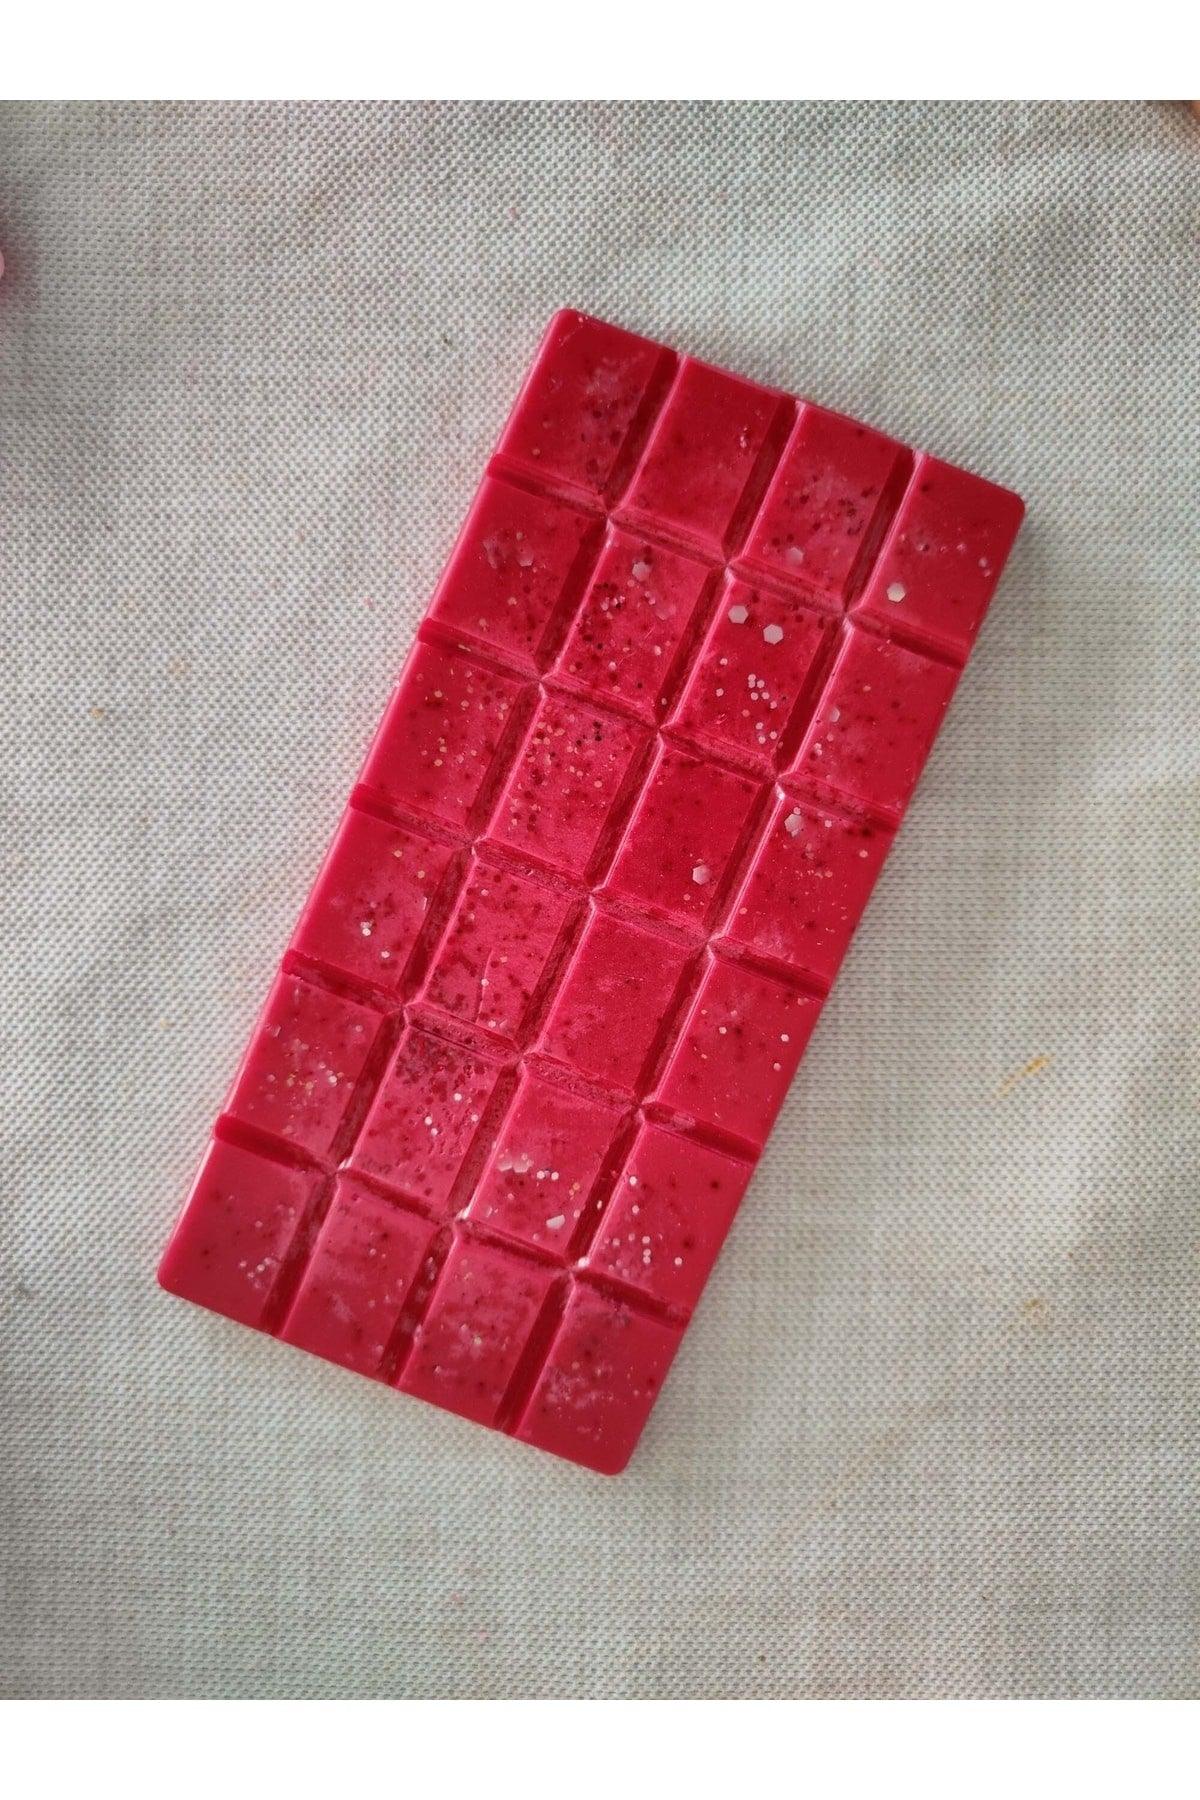 Censer Fragrance Tablet Soy Wax Vegan Wax Melts Censer Candle Strawberry Scented - Swordslife